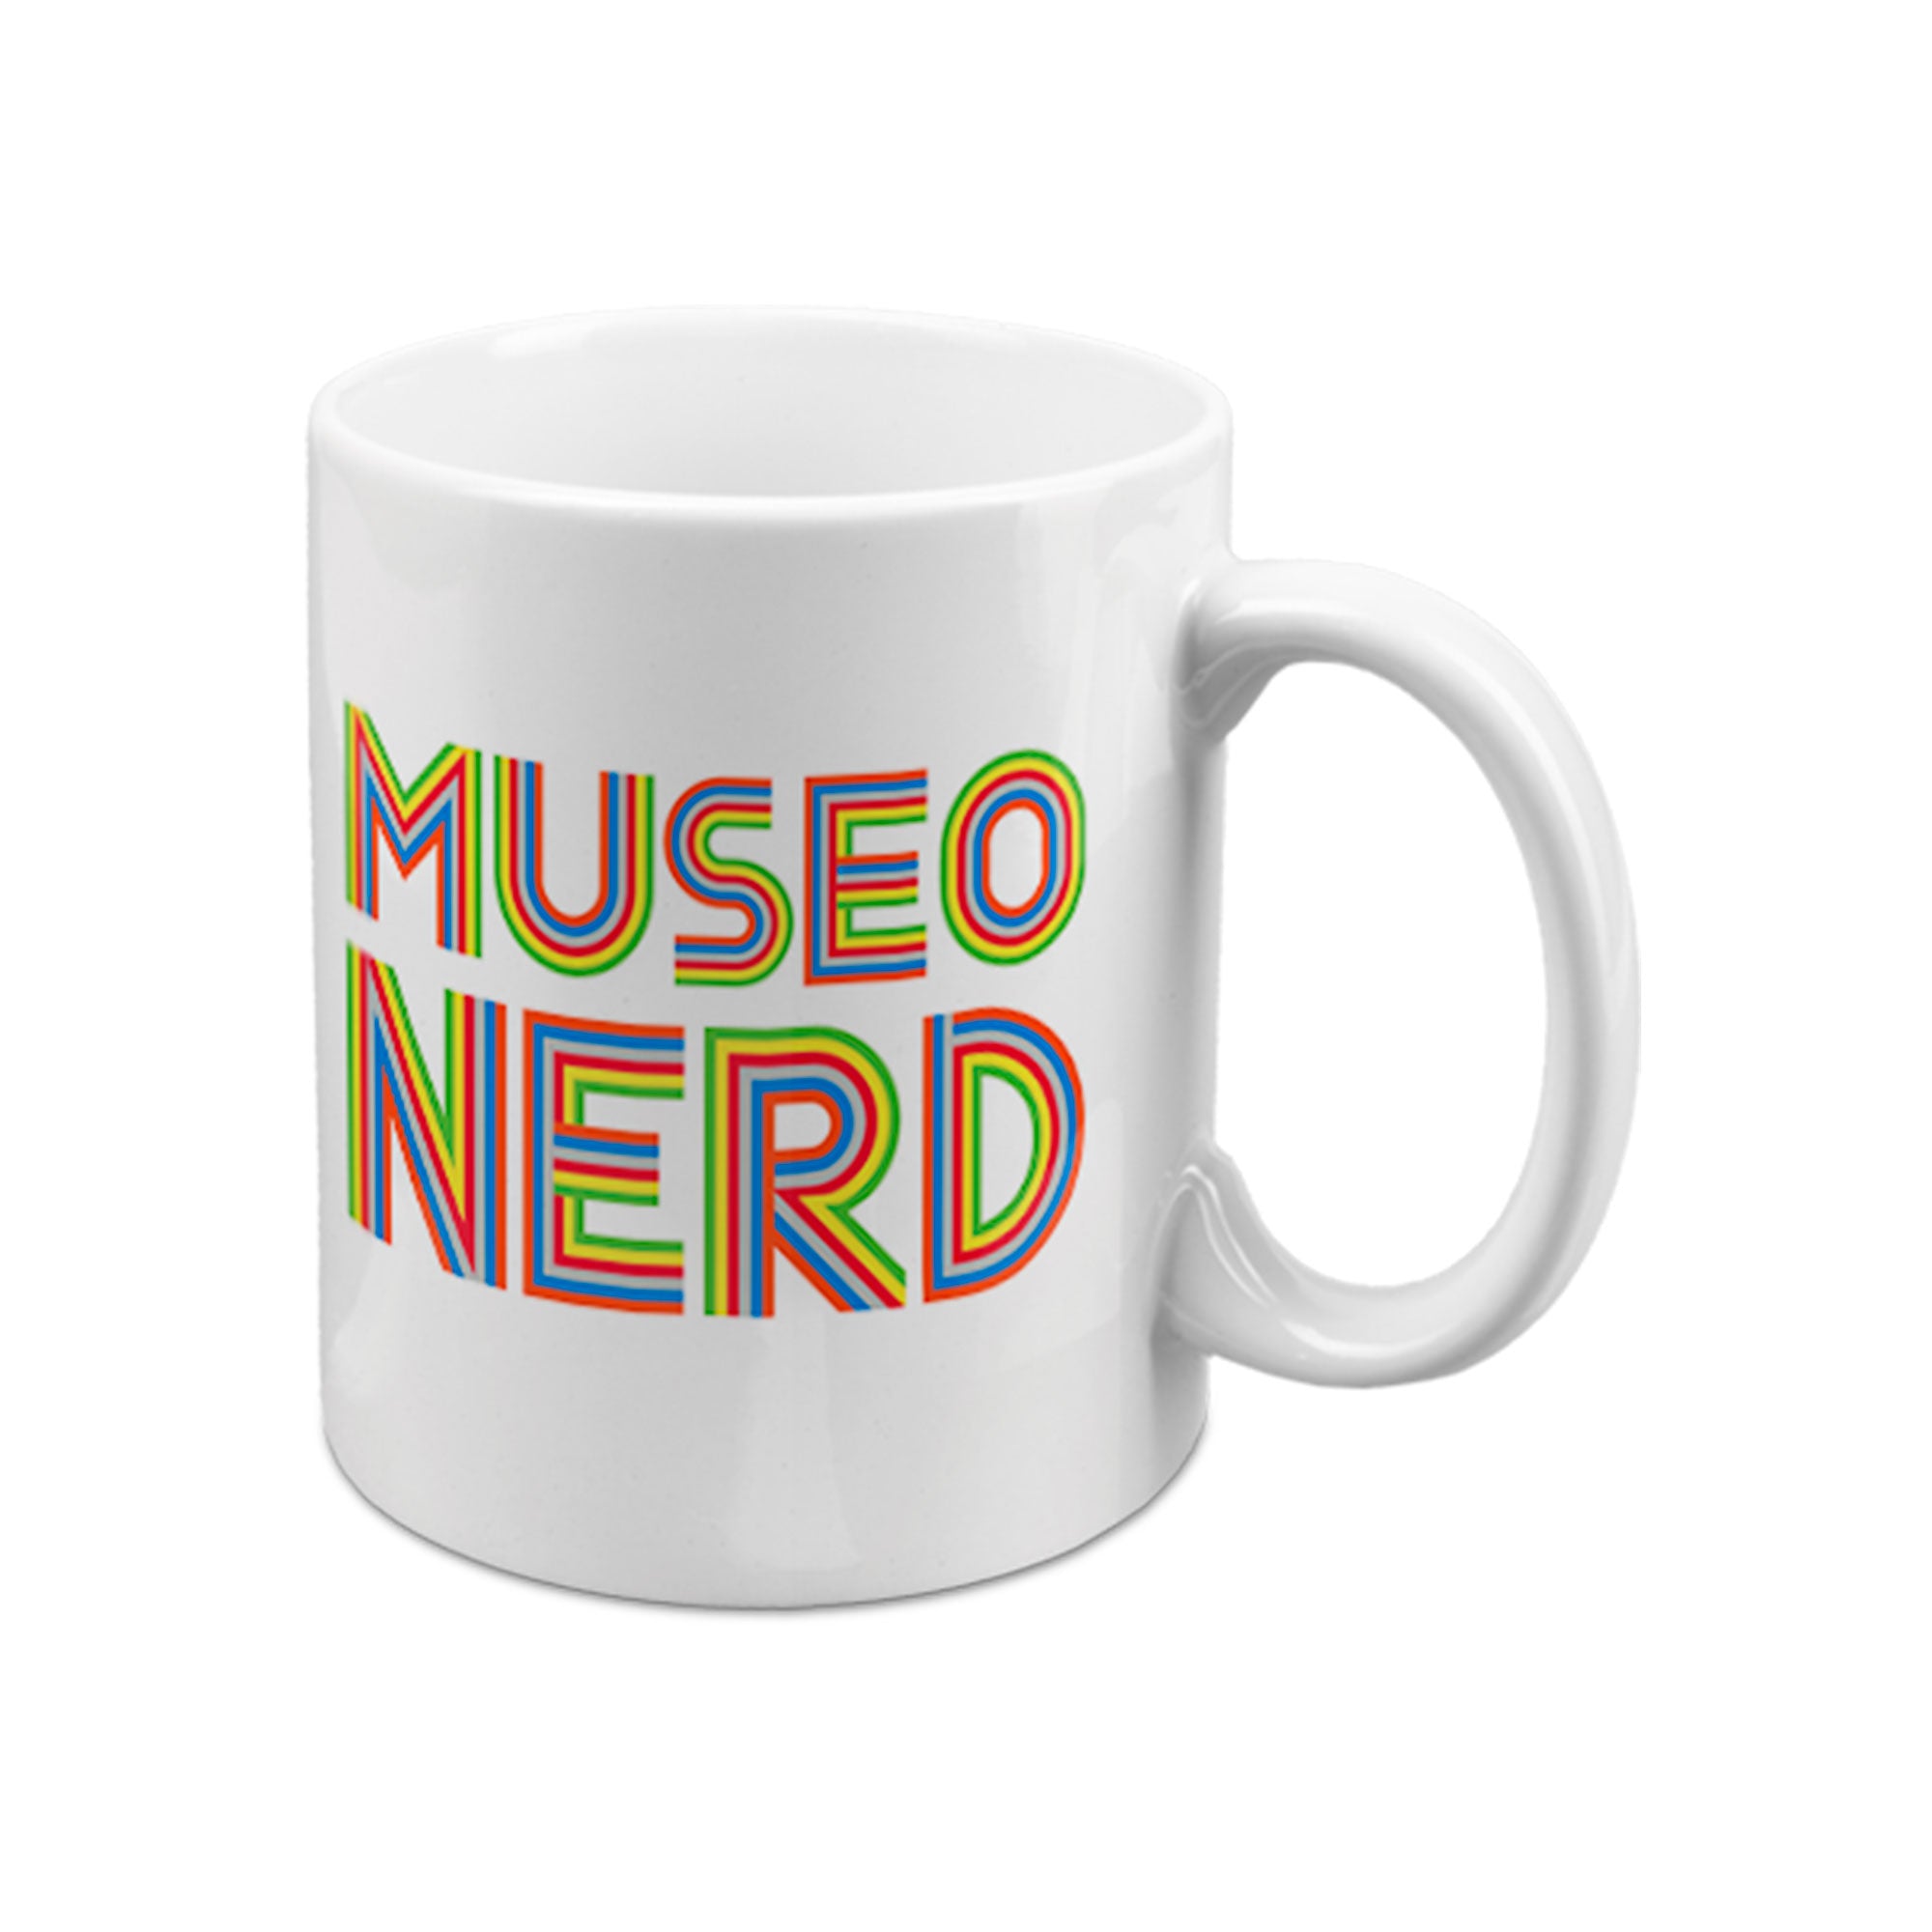 Museo Nerd White Mug